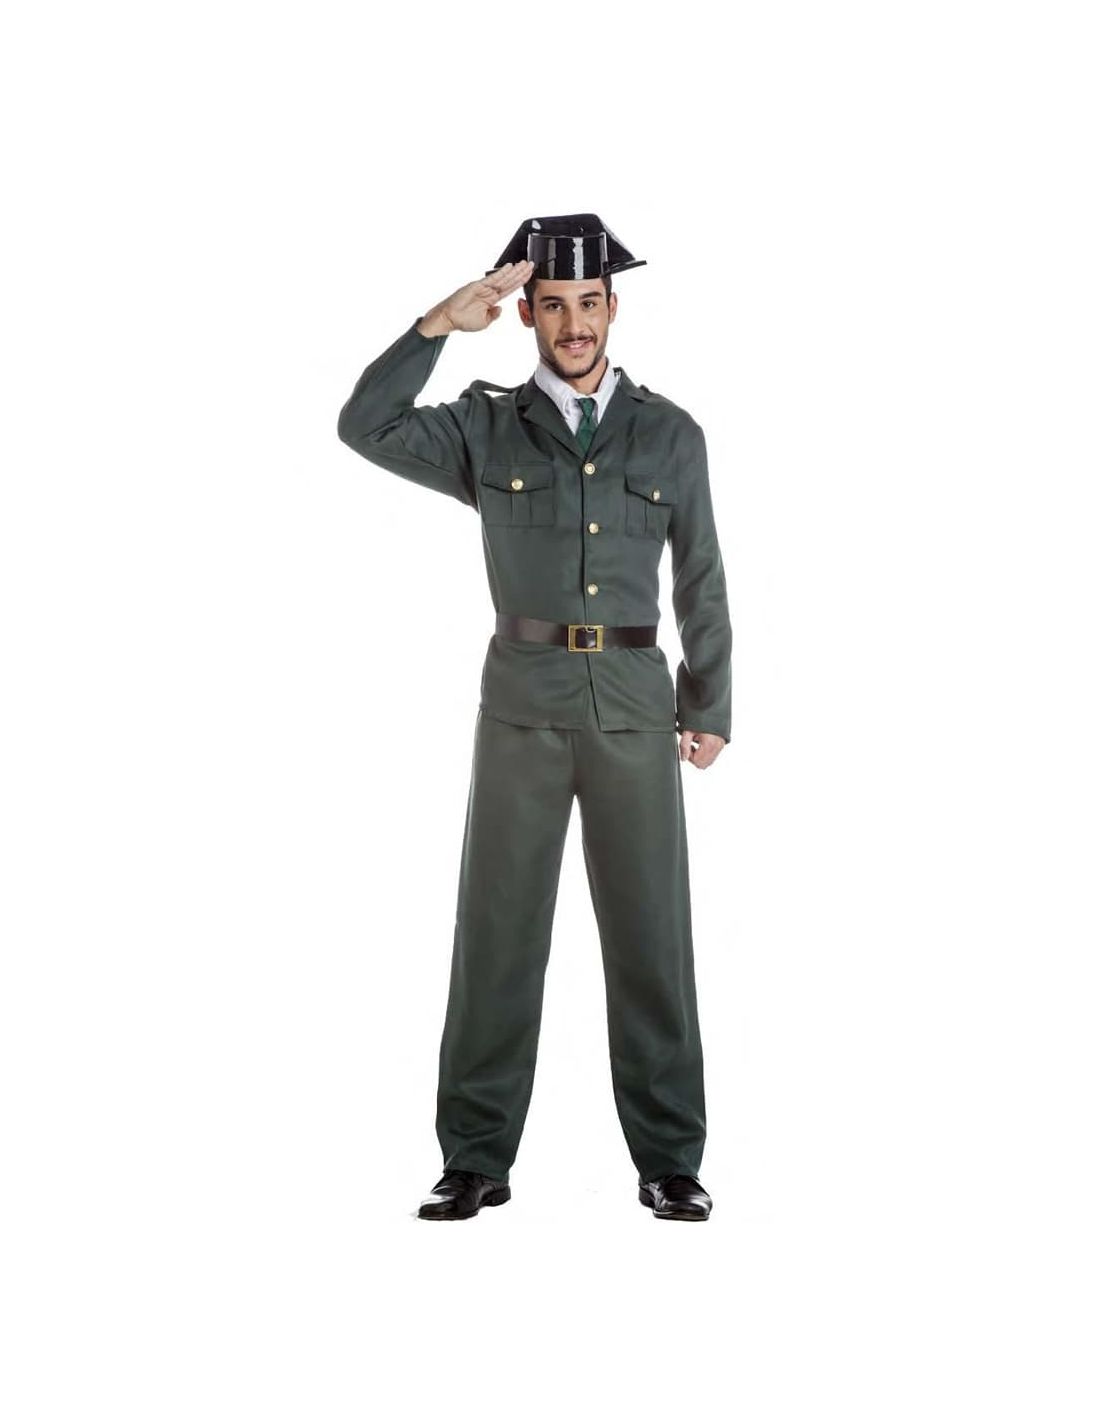 Disfraces de Militares, Soldados & Guardia Civil originales